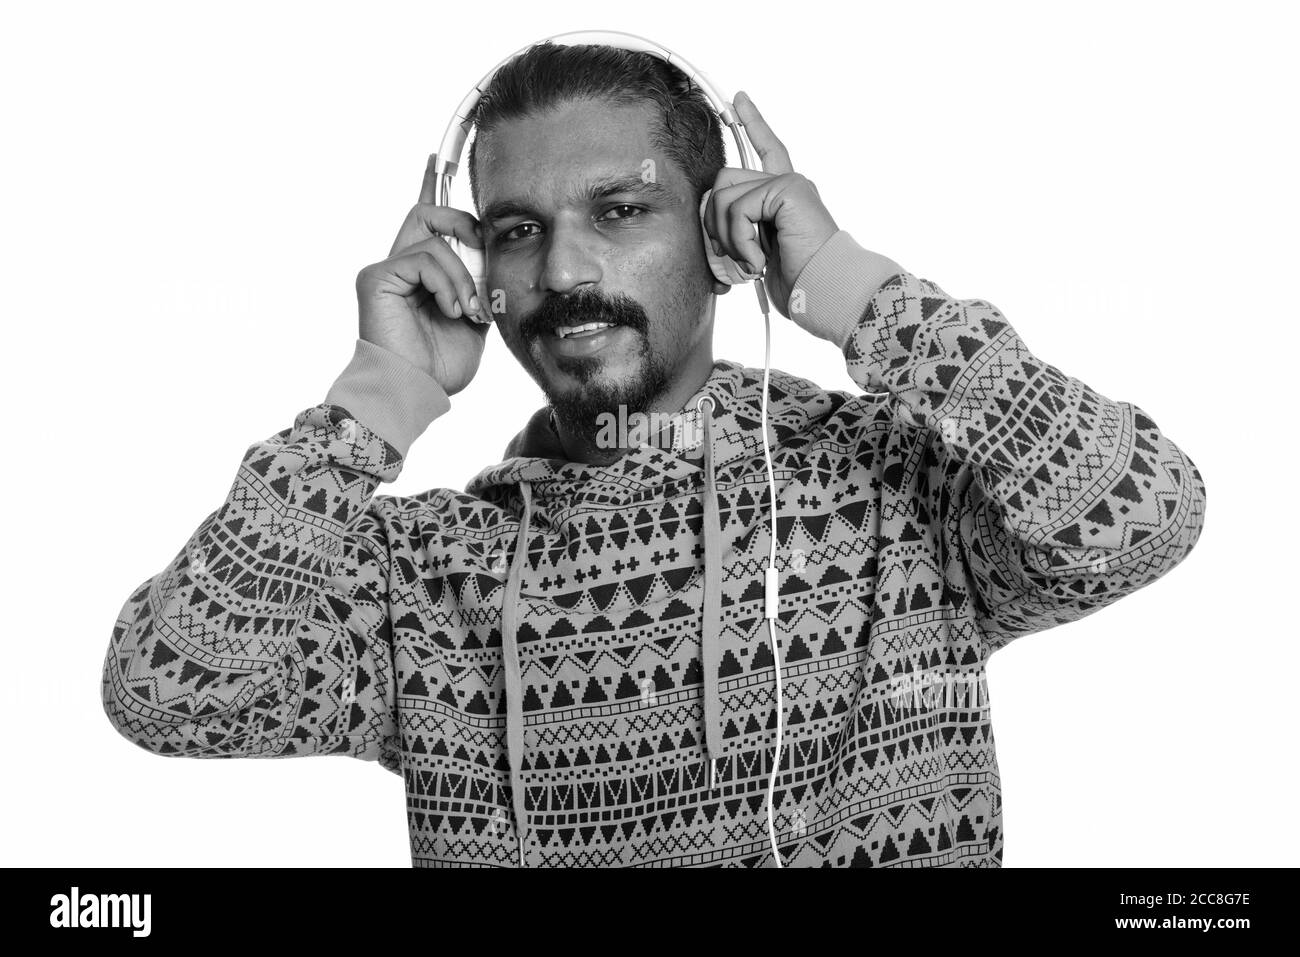 Young happy Indian man smiling tout en écoutant de la musique Banque D'Images